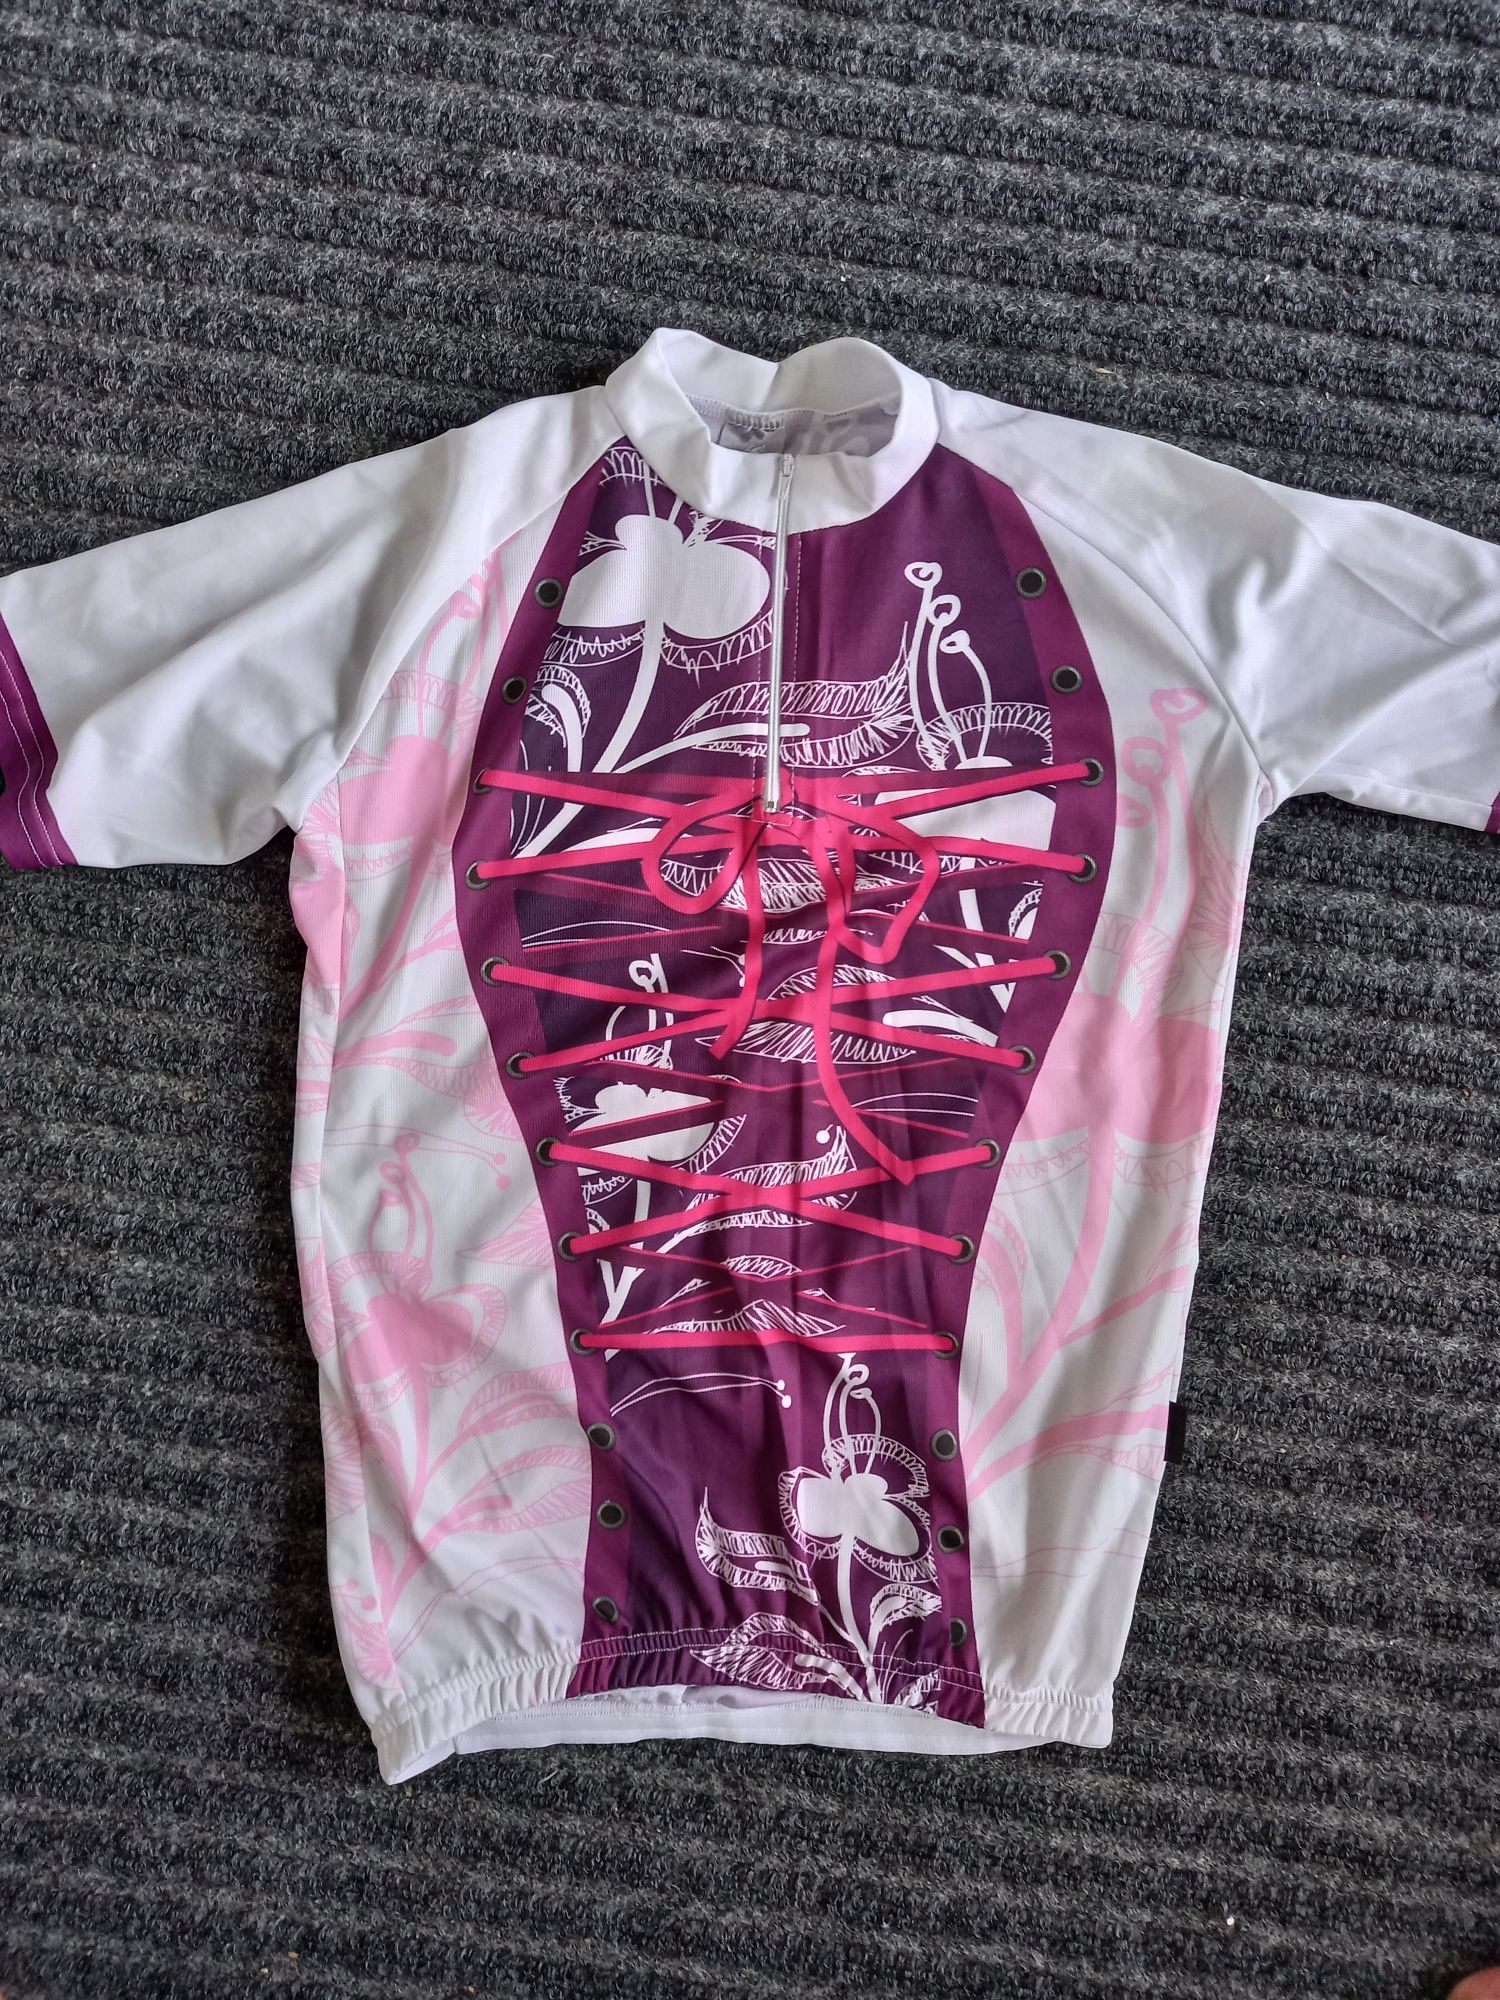 Damska koszulka rowerowa XL